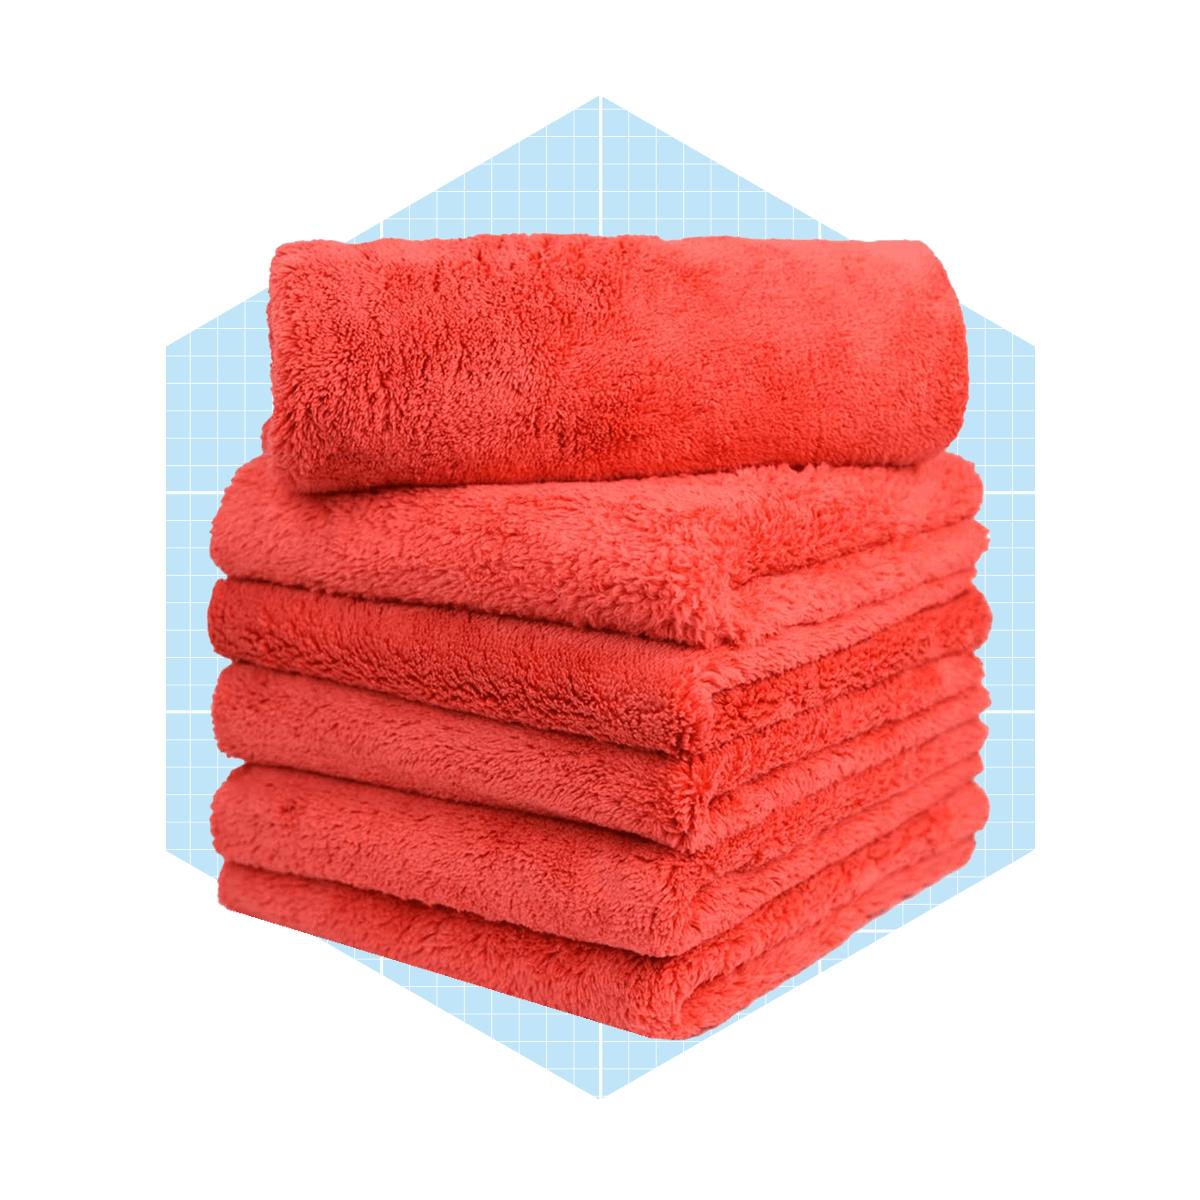 https://www.familyhandyman.com/wp-content/uploads/2021/08/carcarez-microfiber-car-wash-towels-ecomm-via-amazon.com_.png?fit=700%2C700